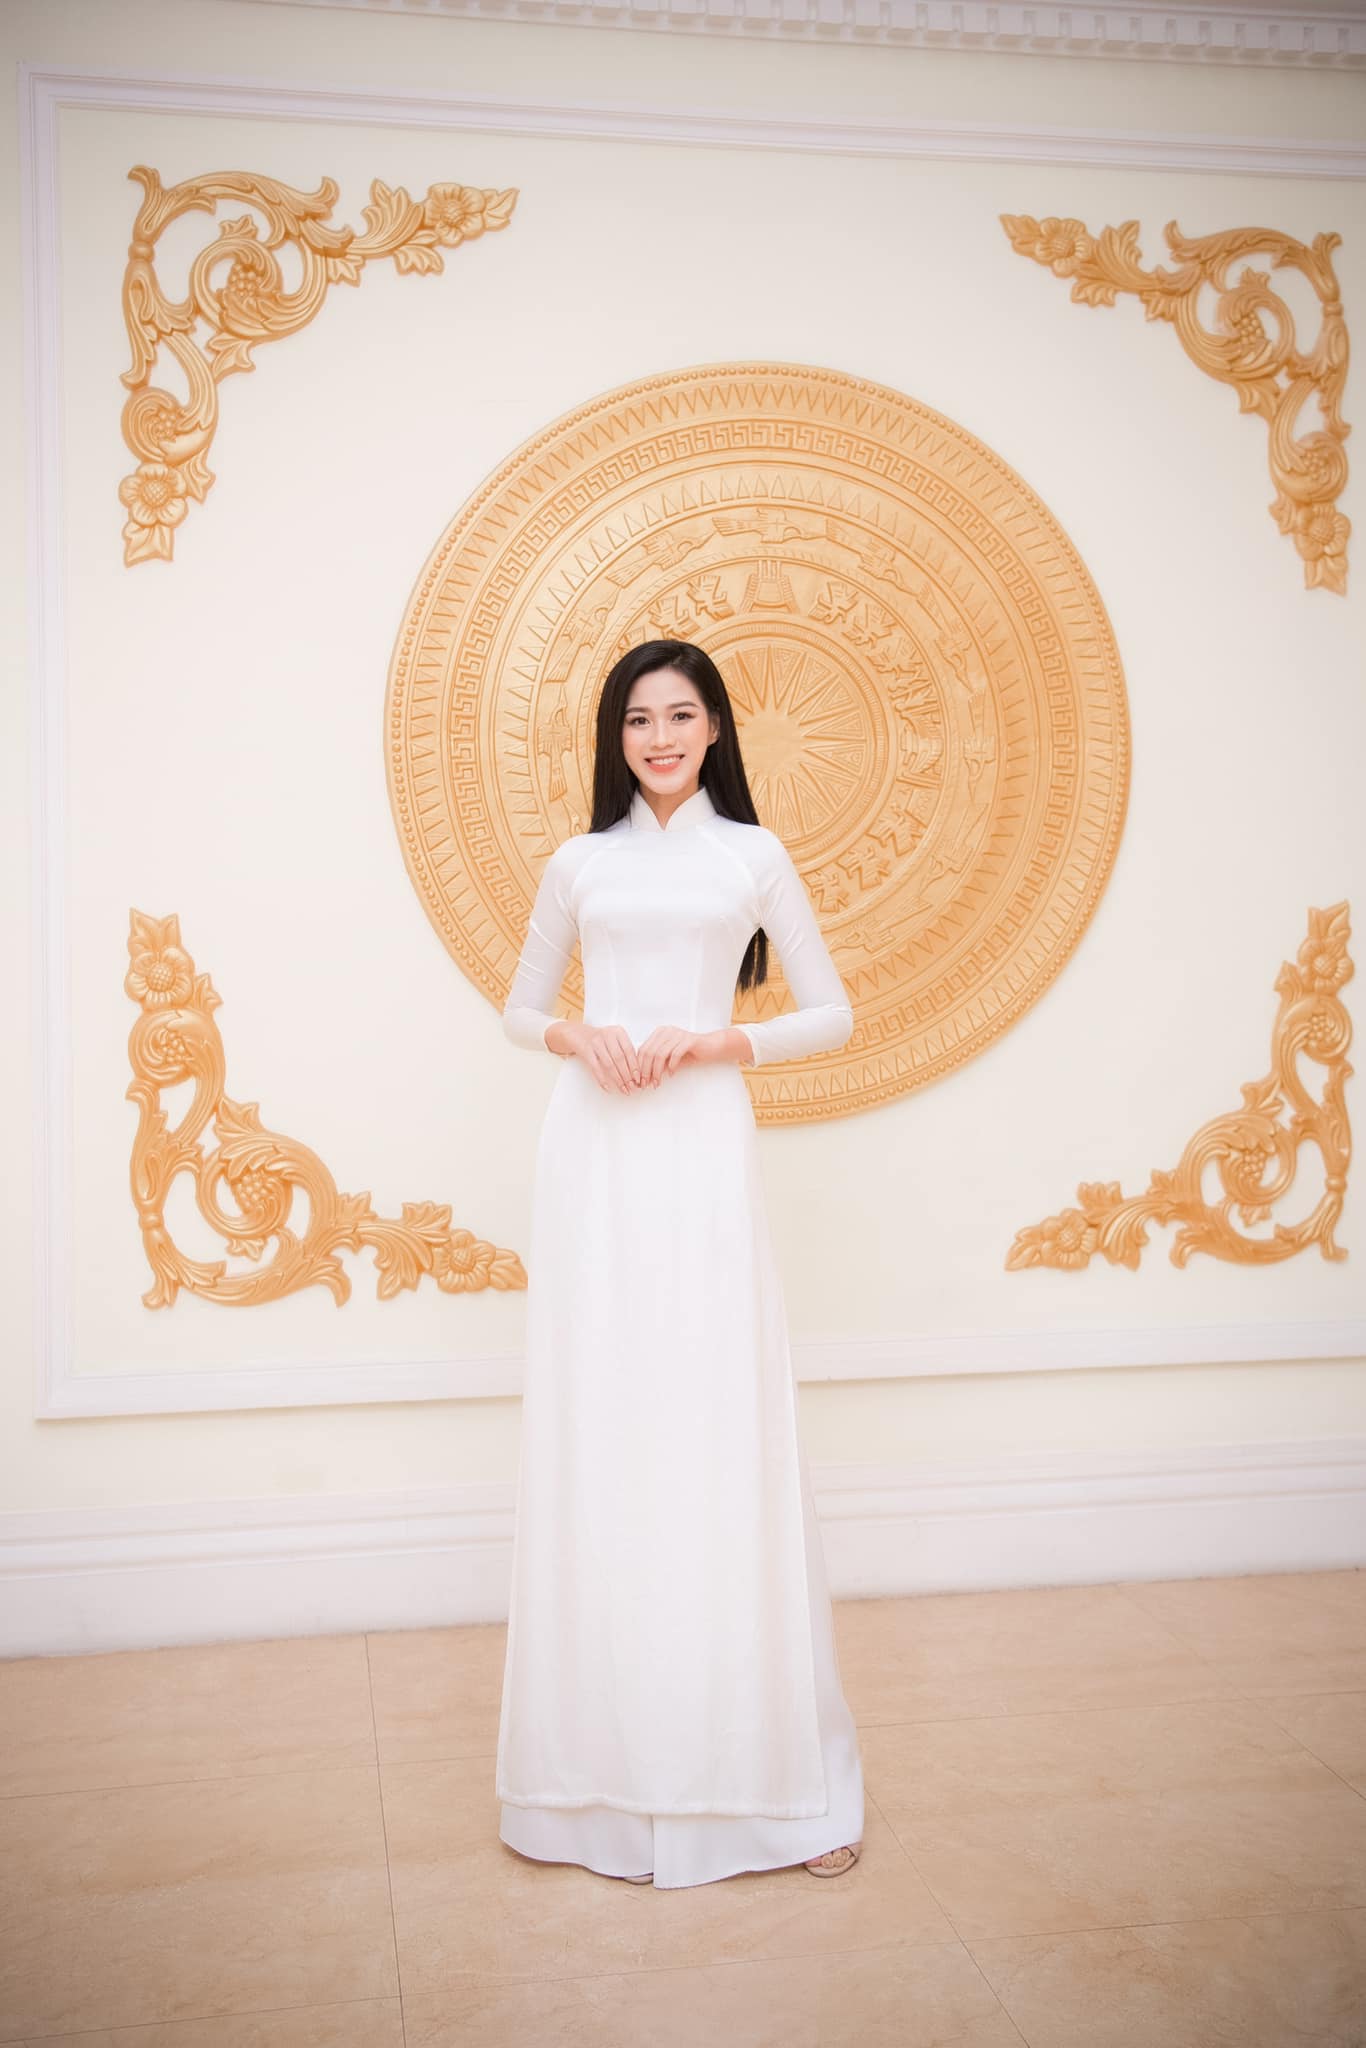 Tối ngày 16/1, Hoa hậu Đỗ Thị Hà chính thức nhận nhiệm vụ mới: Đại sứ hình ảnh của Hội Chữ thập đỏ Việt Nam. Cô mặc áo dài trắng tinh khôi, để tóc xõa đơn giản, tạo được thiện cảm đặc biệt với công chúng.